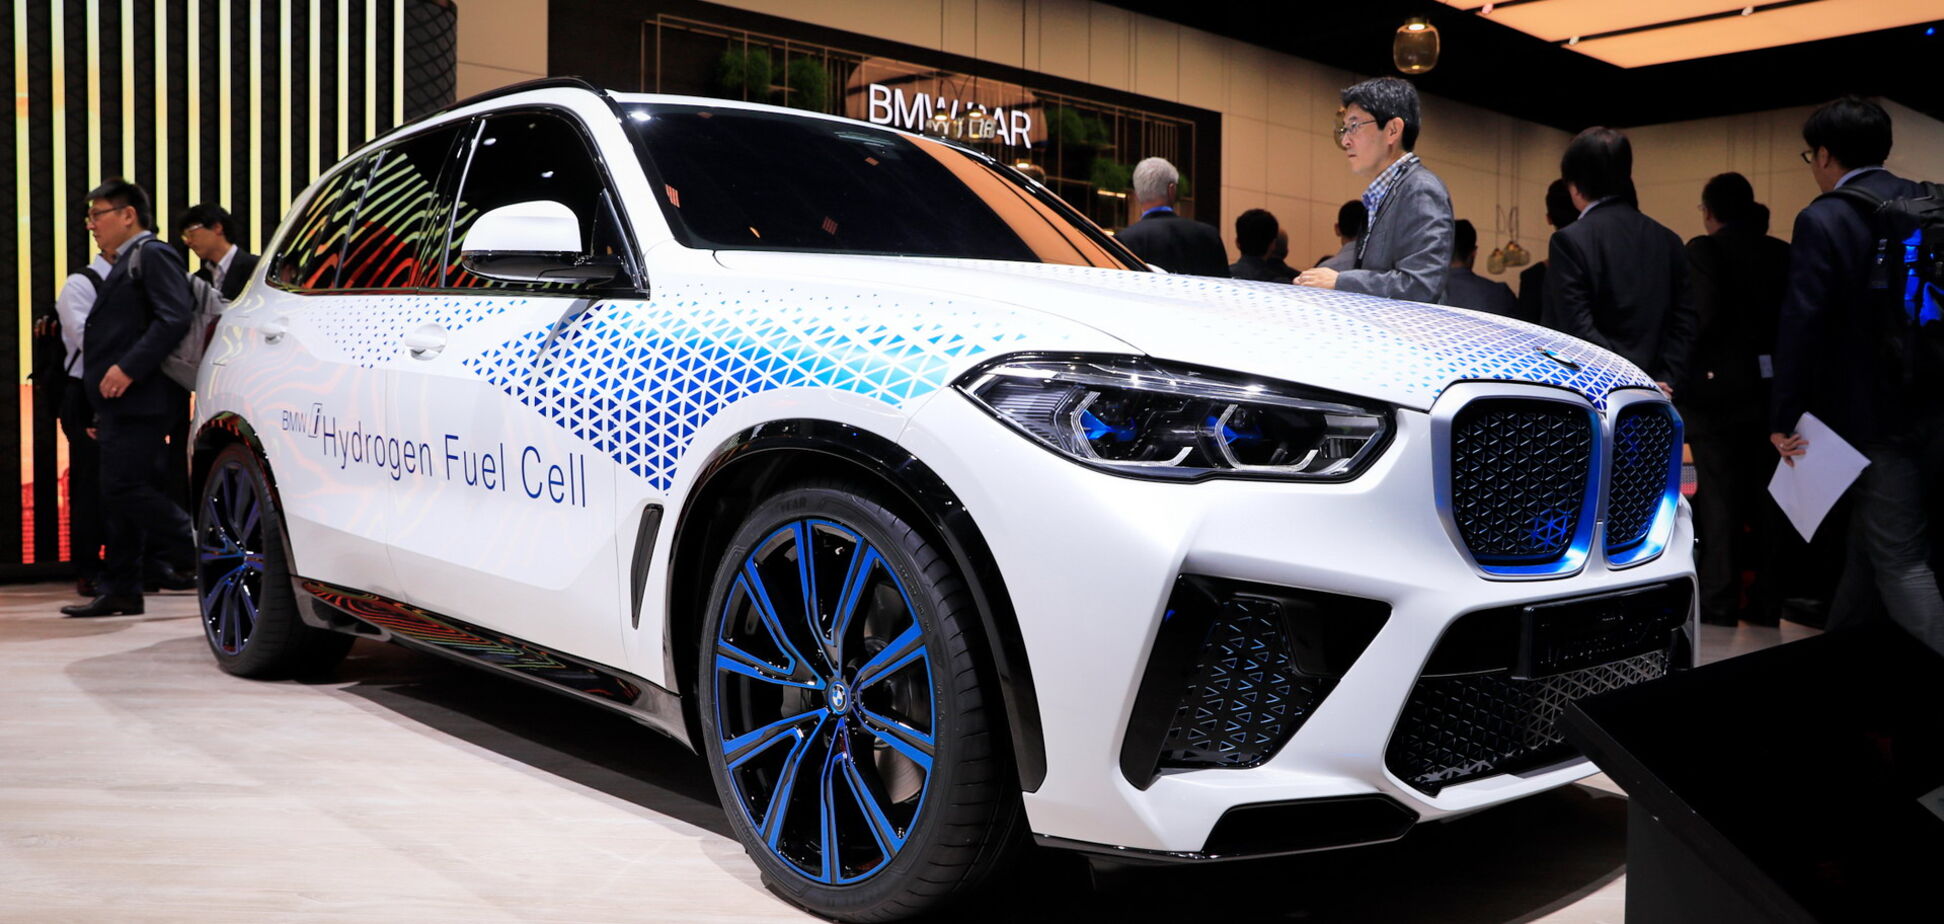 Заправка за 3-4 мин: BMW раскрыла начинку электрического X5